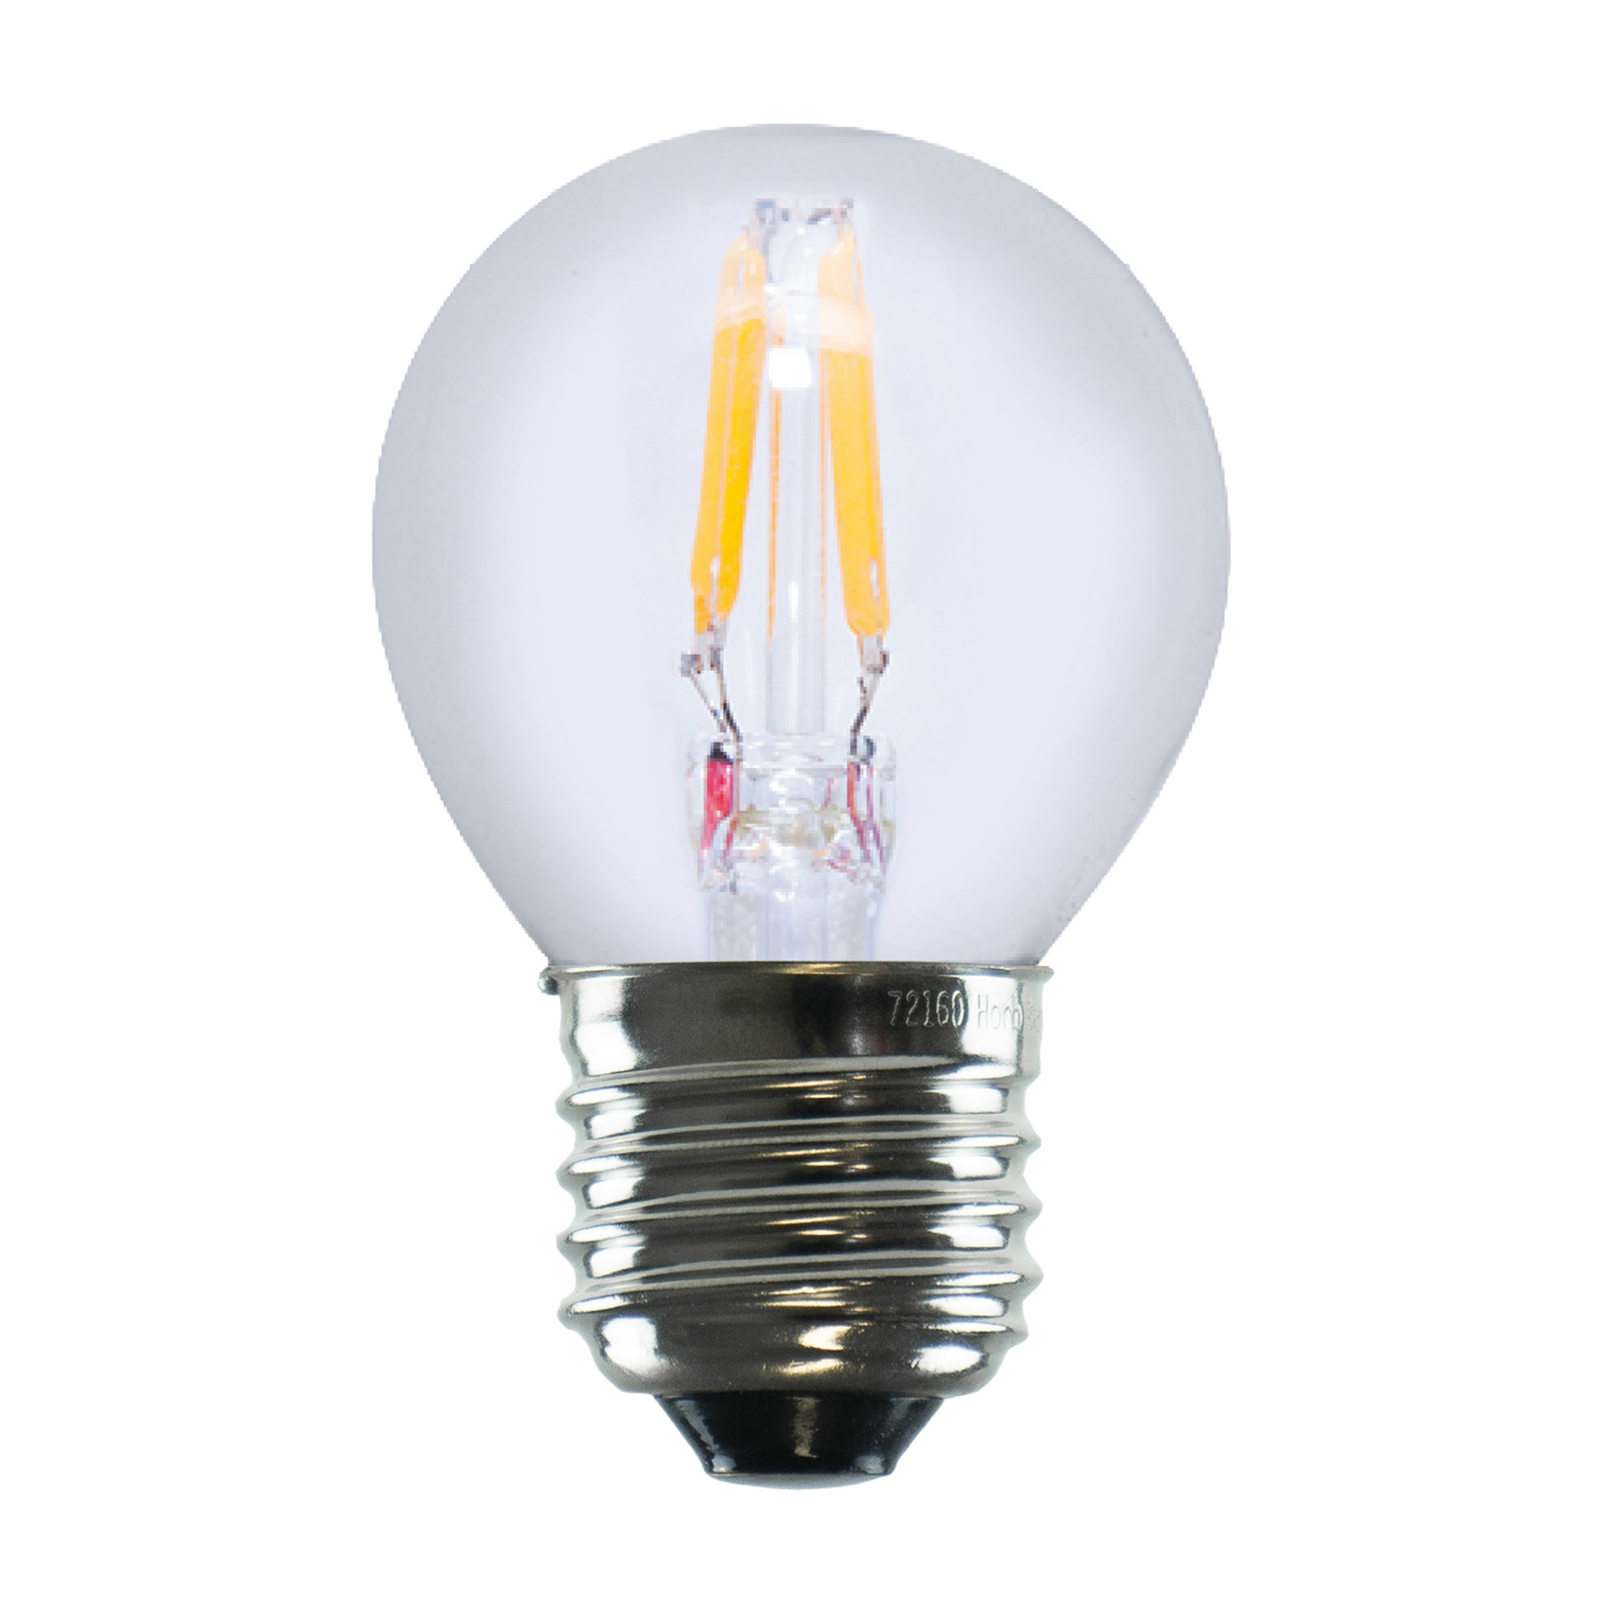 Segula Lamp 24V E27 3W 927 Filamento ambiente